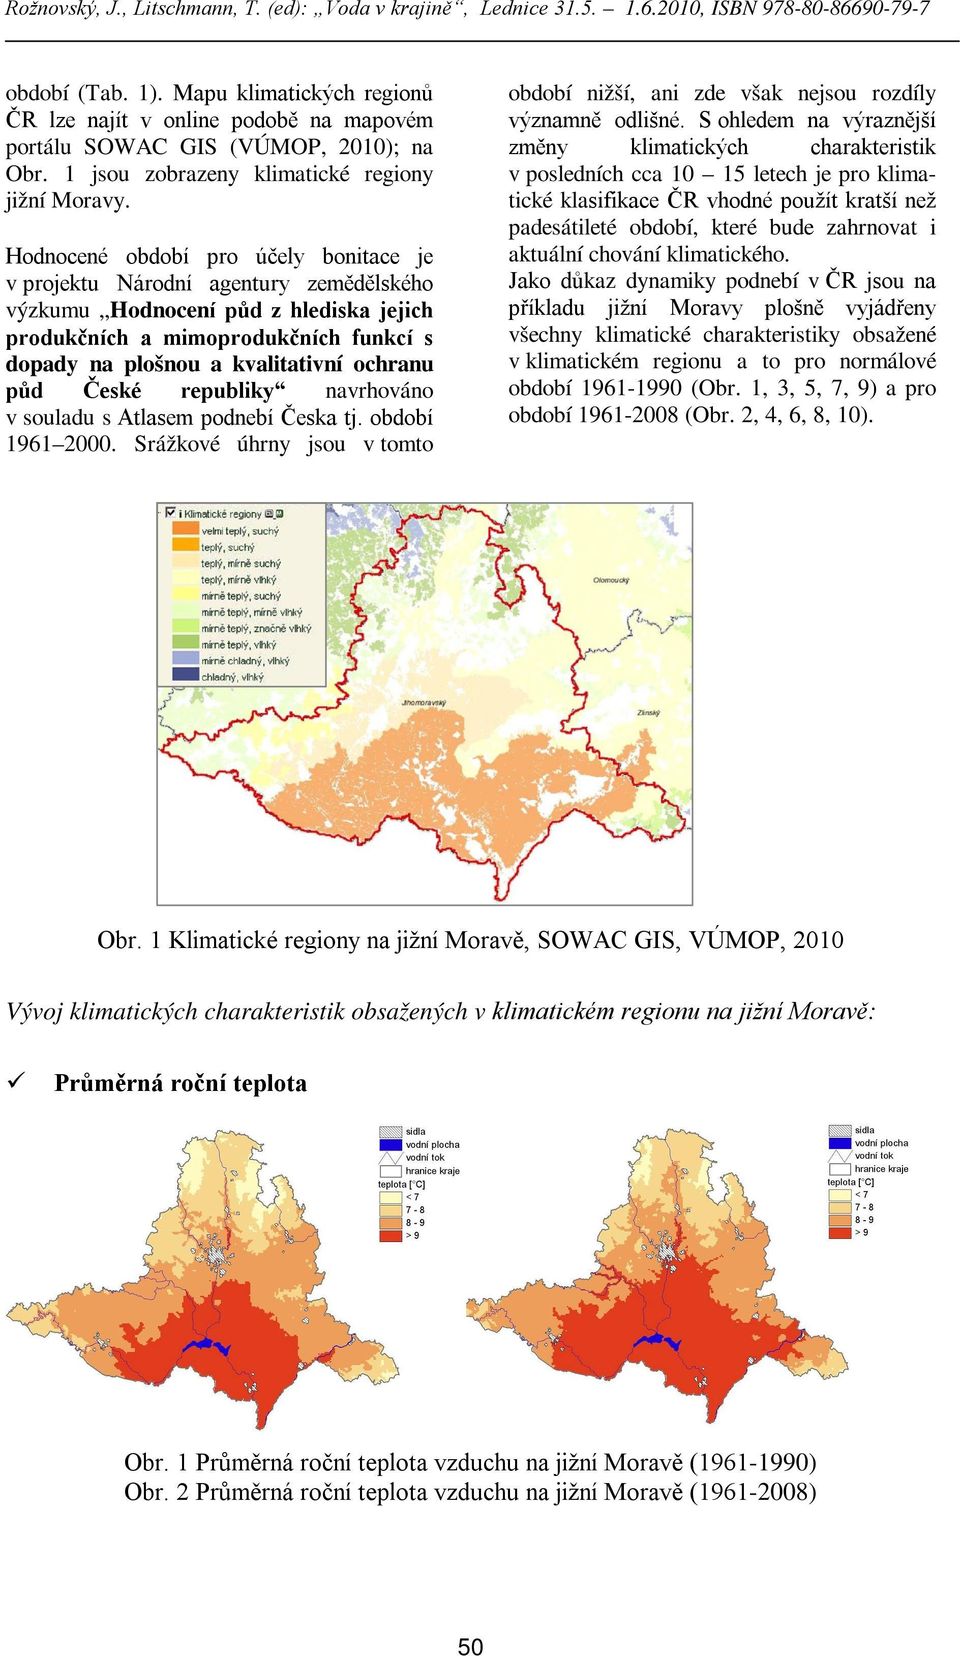 půd České republiky navrhováno v souladu s Atlasem podnebí Česka tj. období 1961 2000. Srážkové úhrny jsou v tomto období nižší, ani zde však nejsou rozdíly významně odlišné.